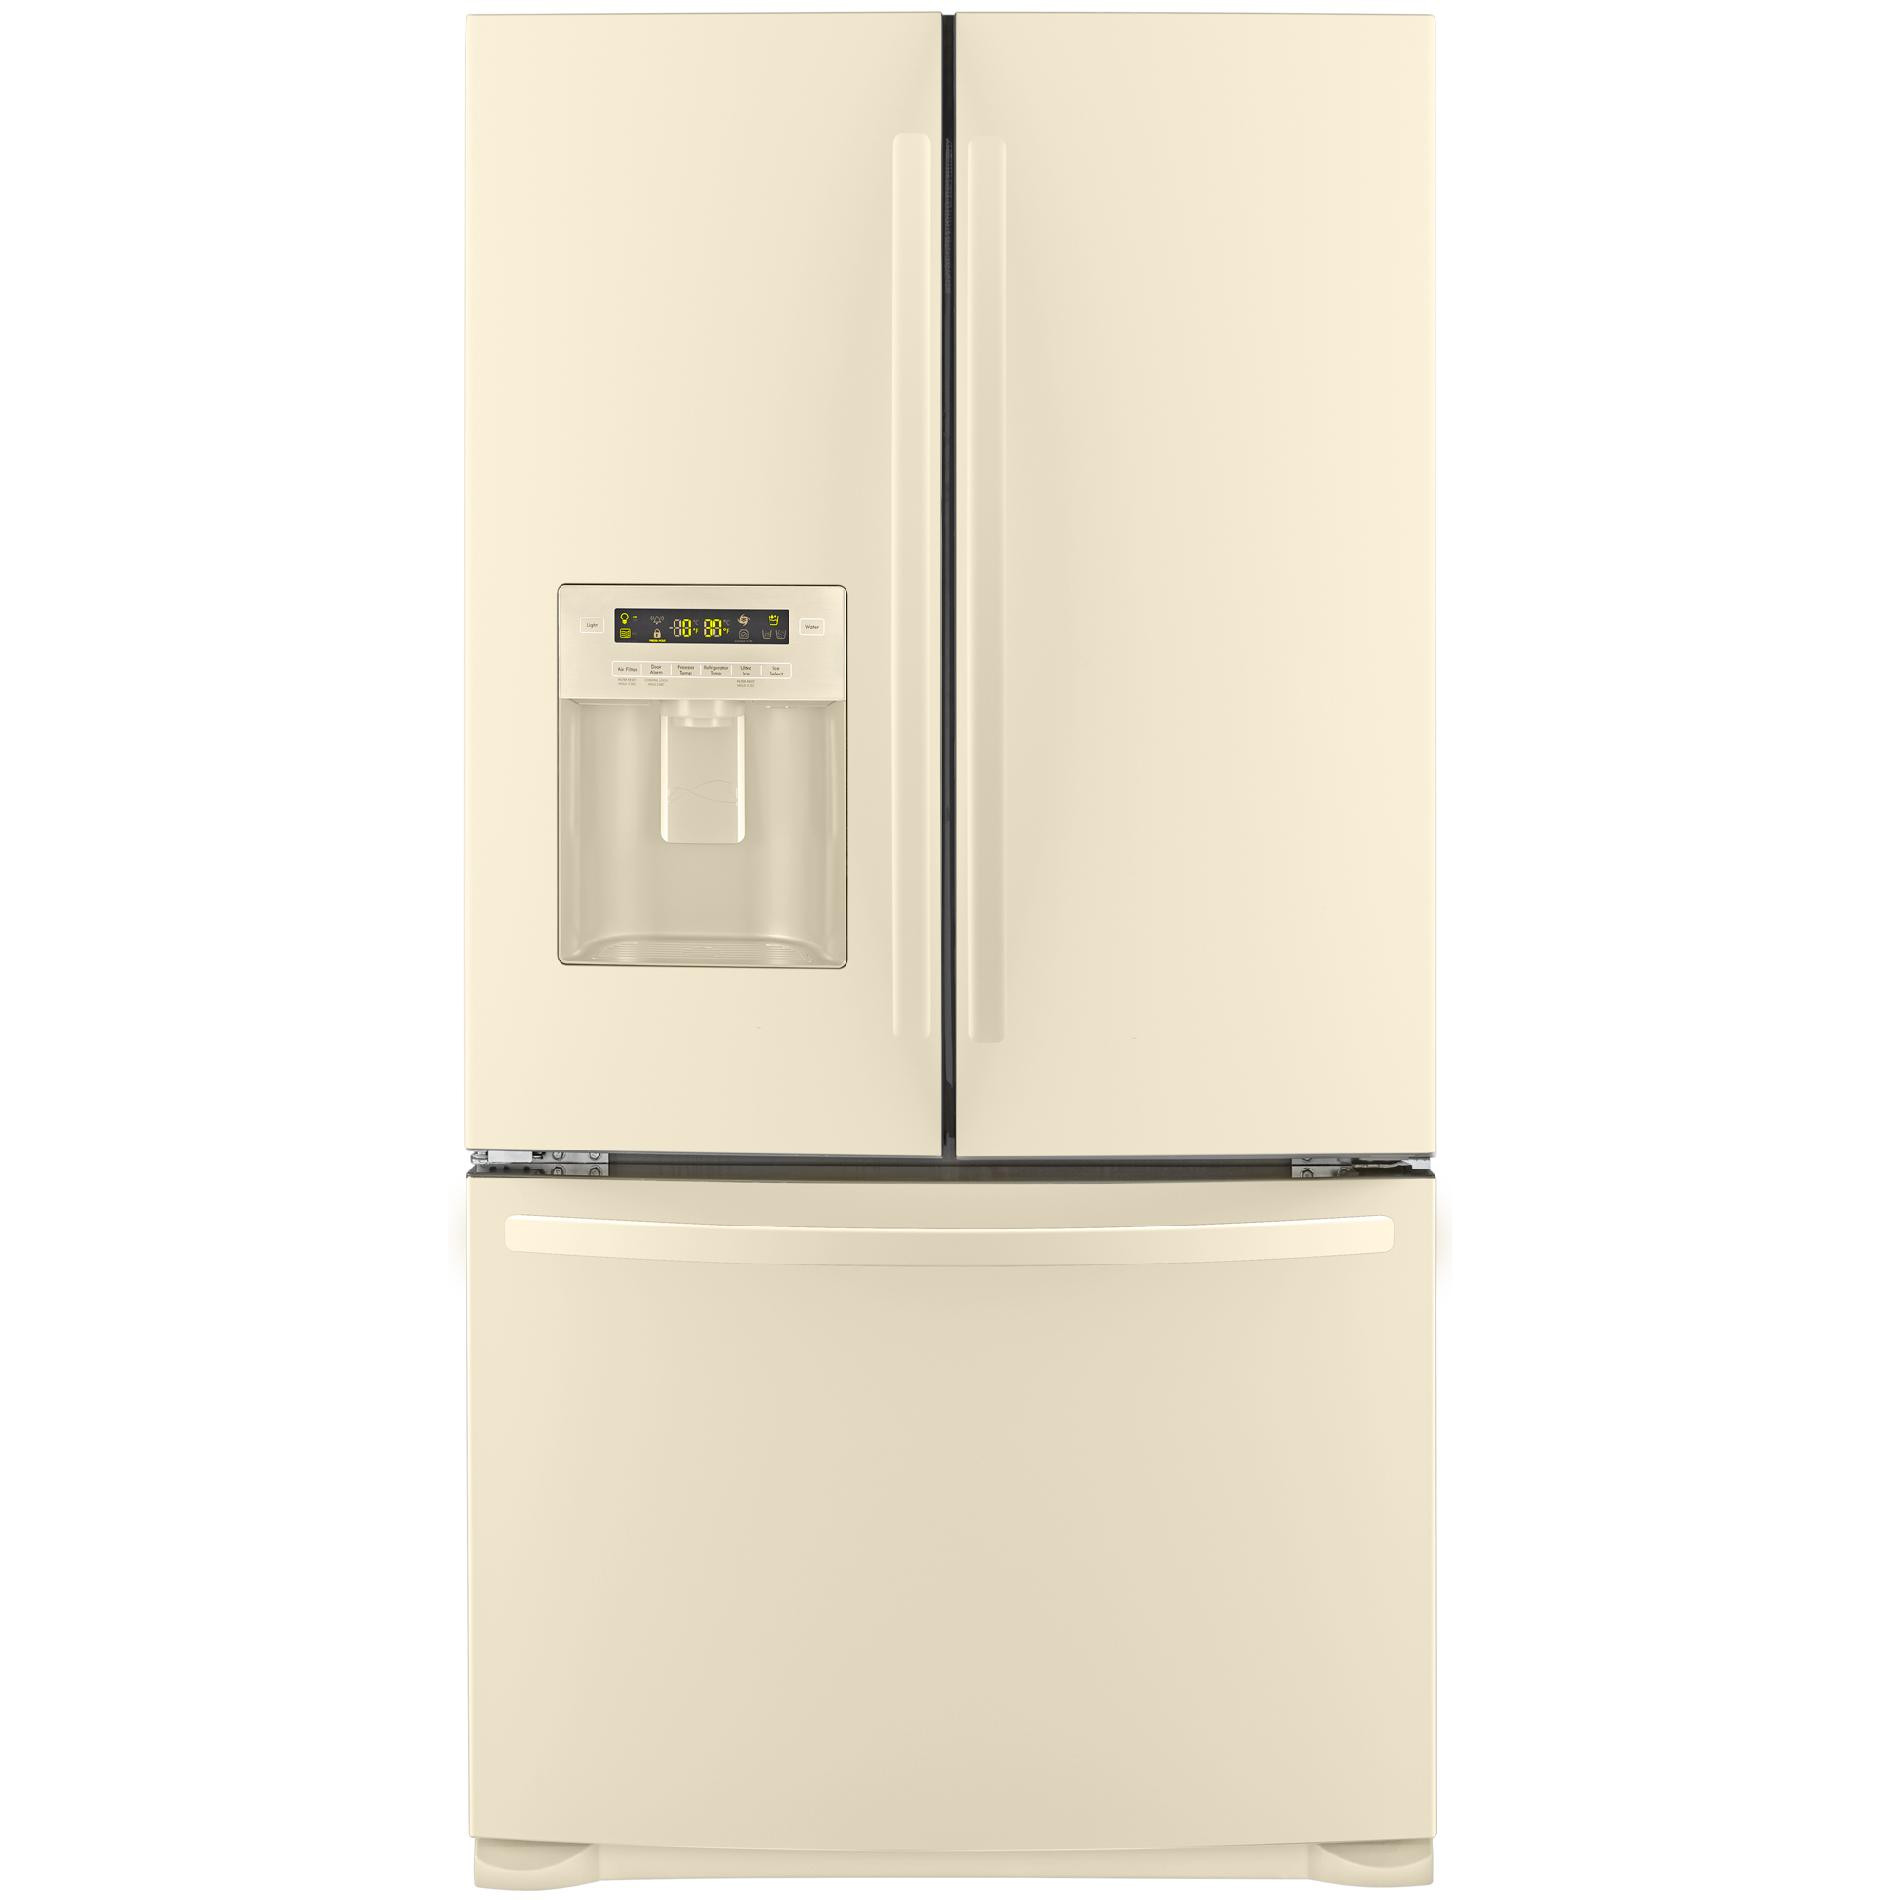 Bisque Refrigerator Bottom Freezer
 Kenmore 26 8 cu ft French Door Bottom Freezer